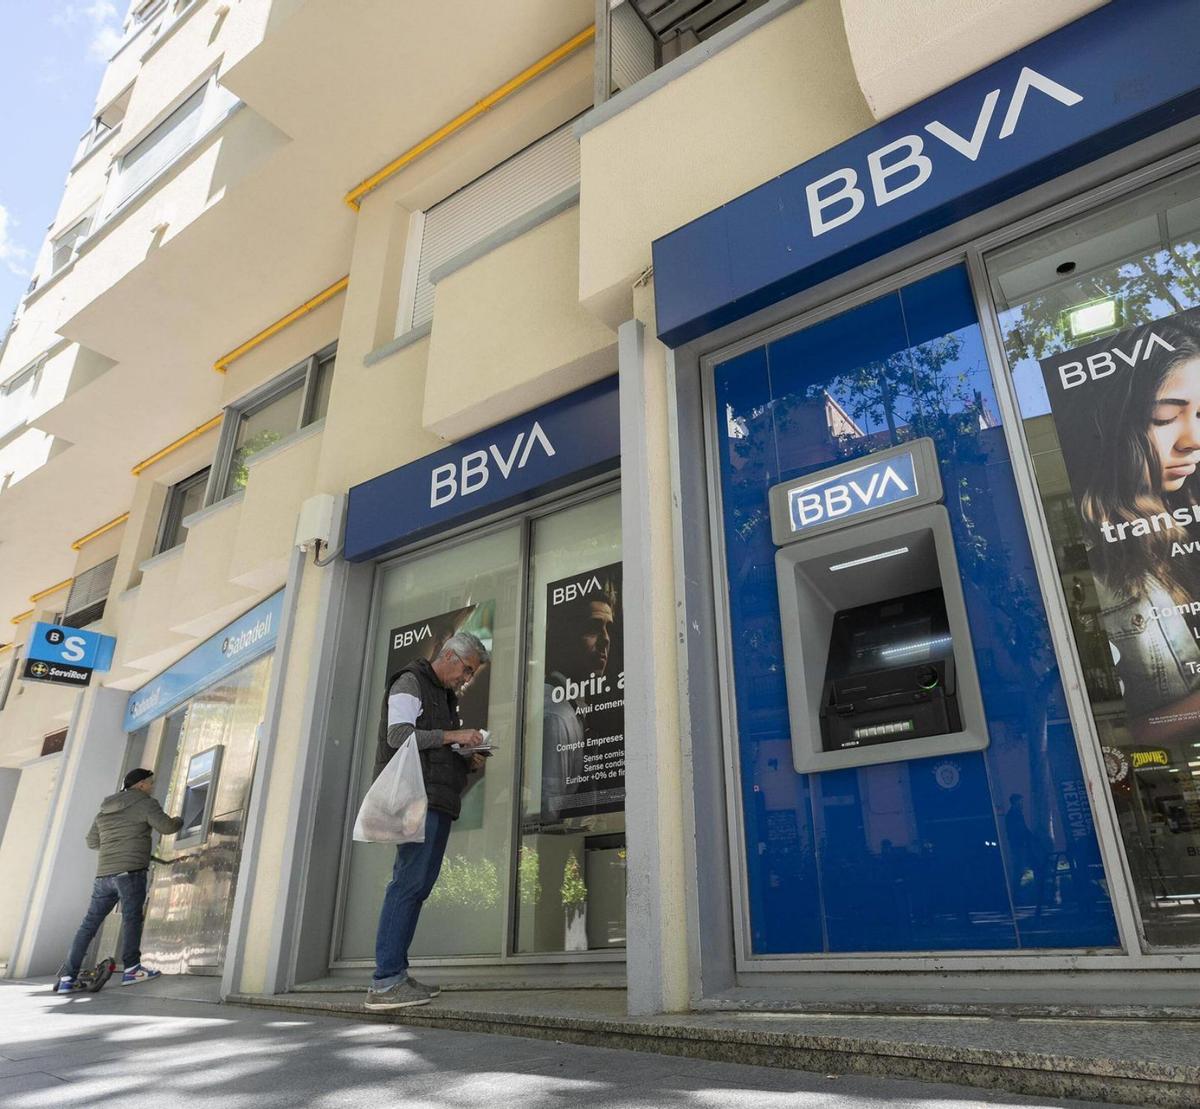 El Sabadell rebutja l’oferta de fusió del BBVA i aposta per continuar en solitari